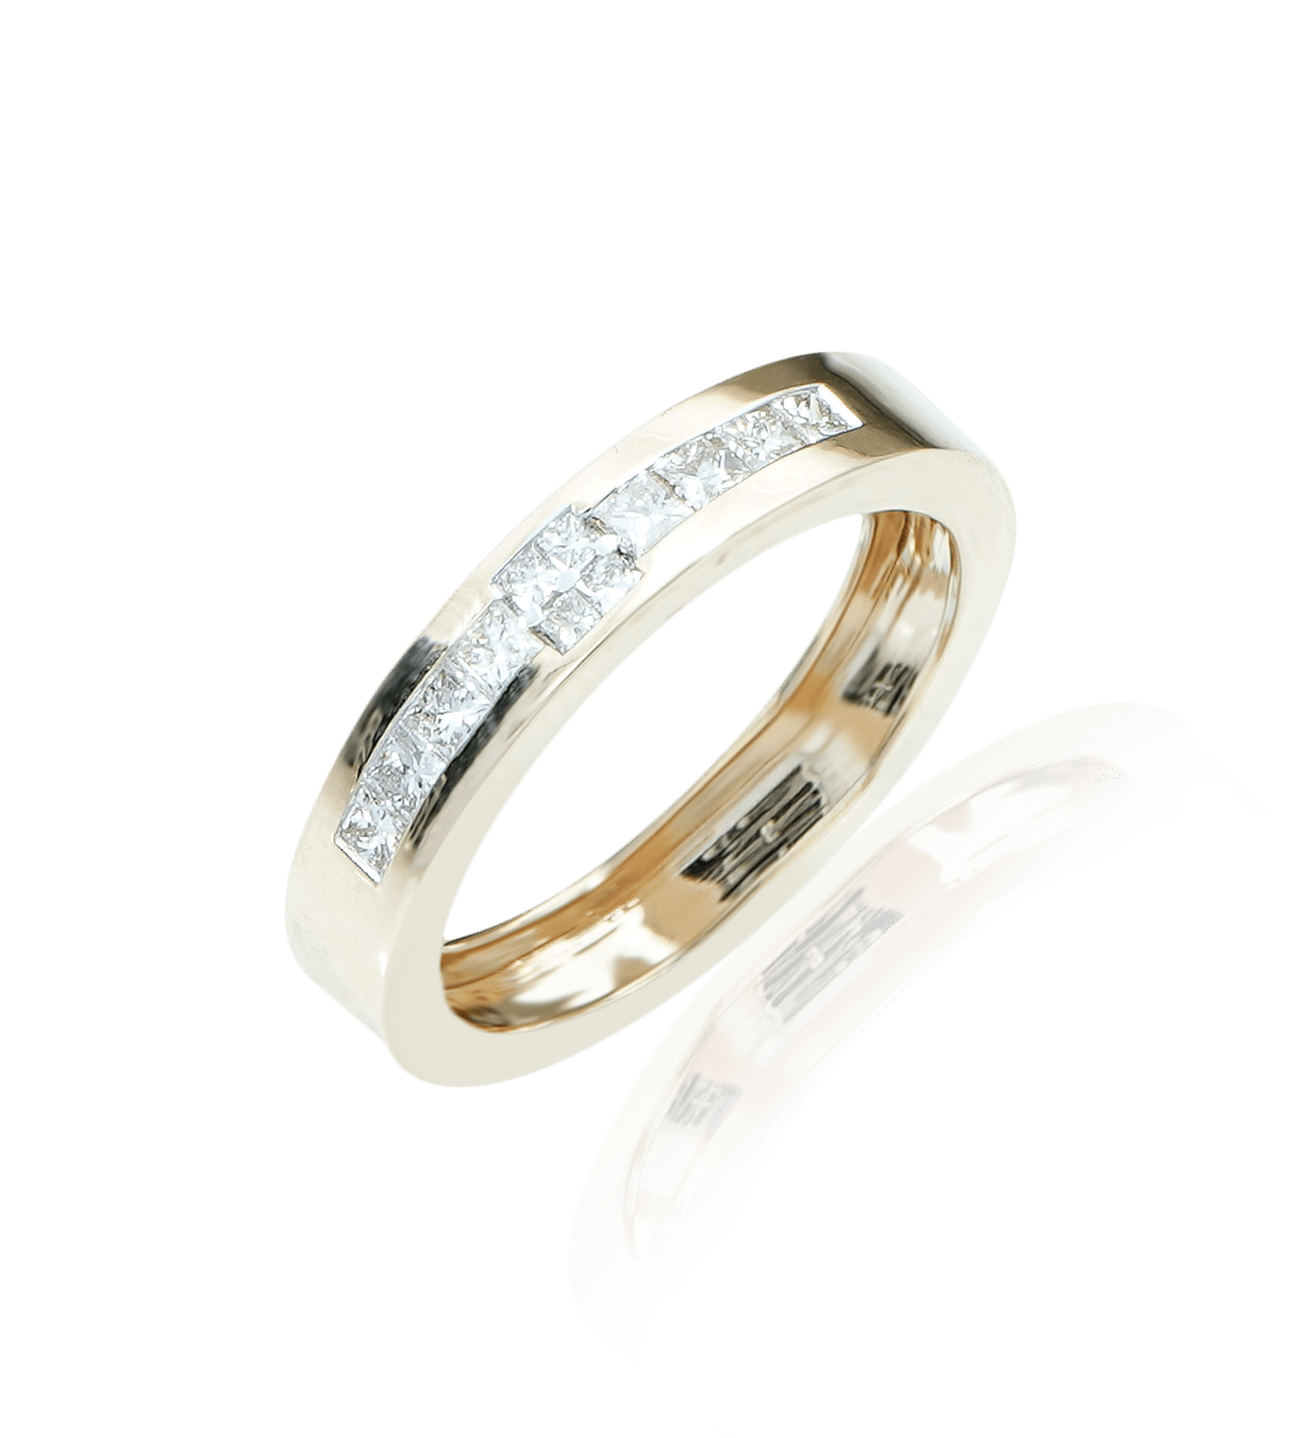 Buy Men's Diamond Finger Ring in 14KT Yellow Gold Online | ORRA